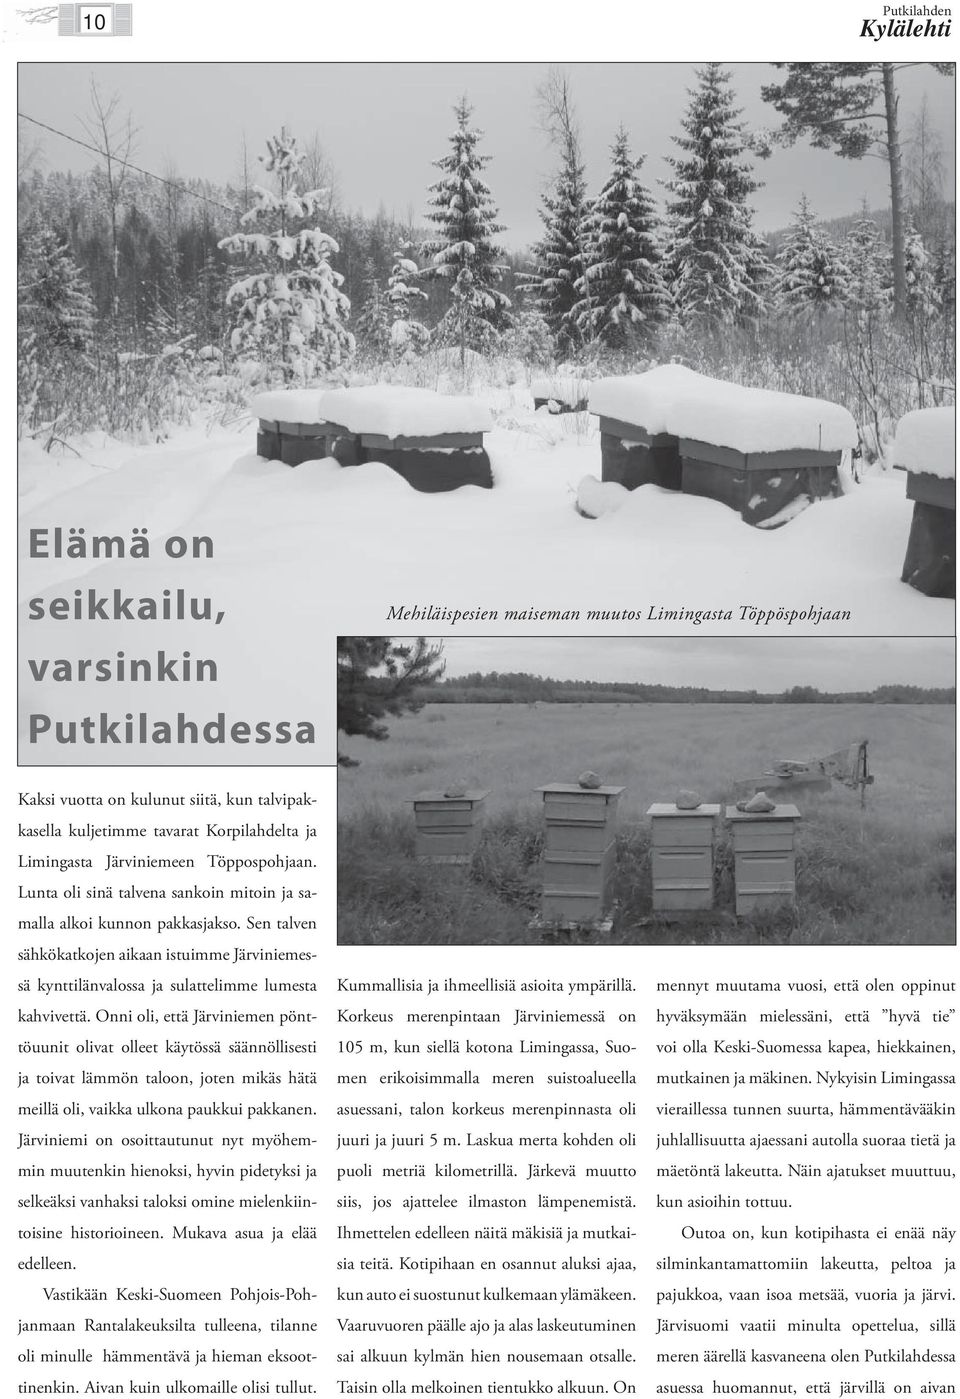 Sen talven sähkökatkojen aikaan istuimme Järviniemessä kynttilänvalossa ja sulattelimme lumesta kahvivettä.